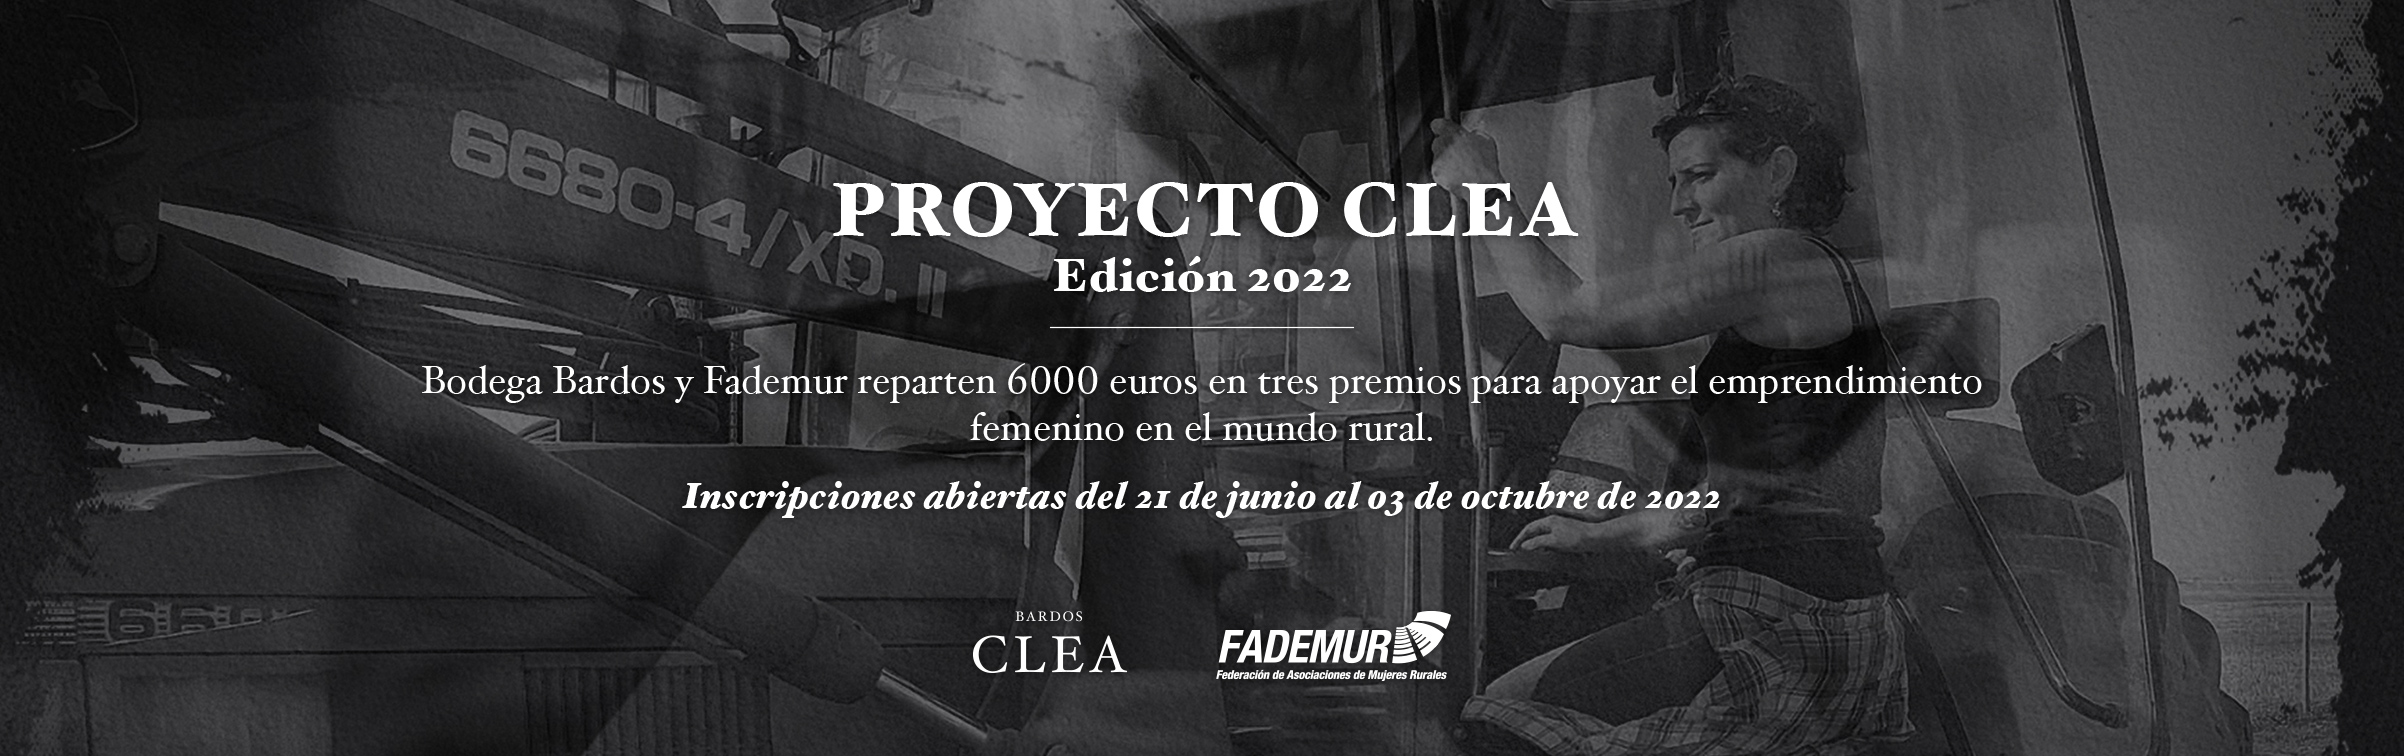 proyecto clea 2022